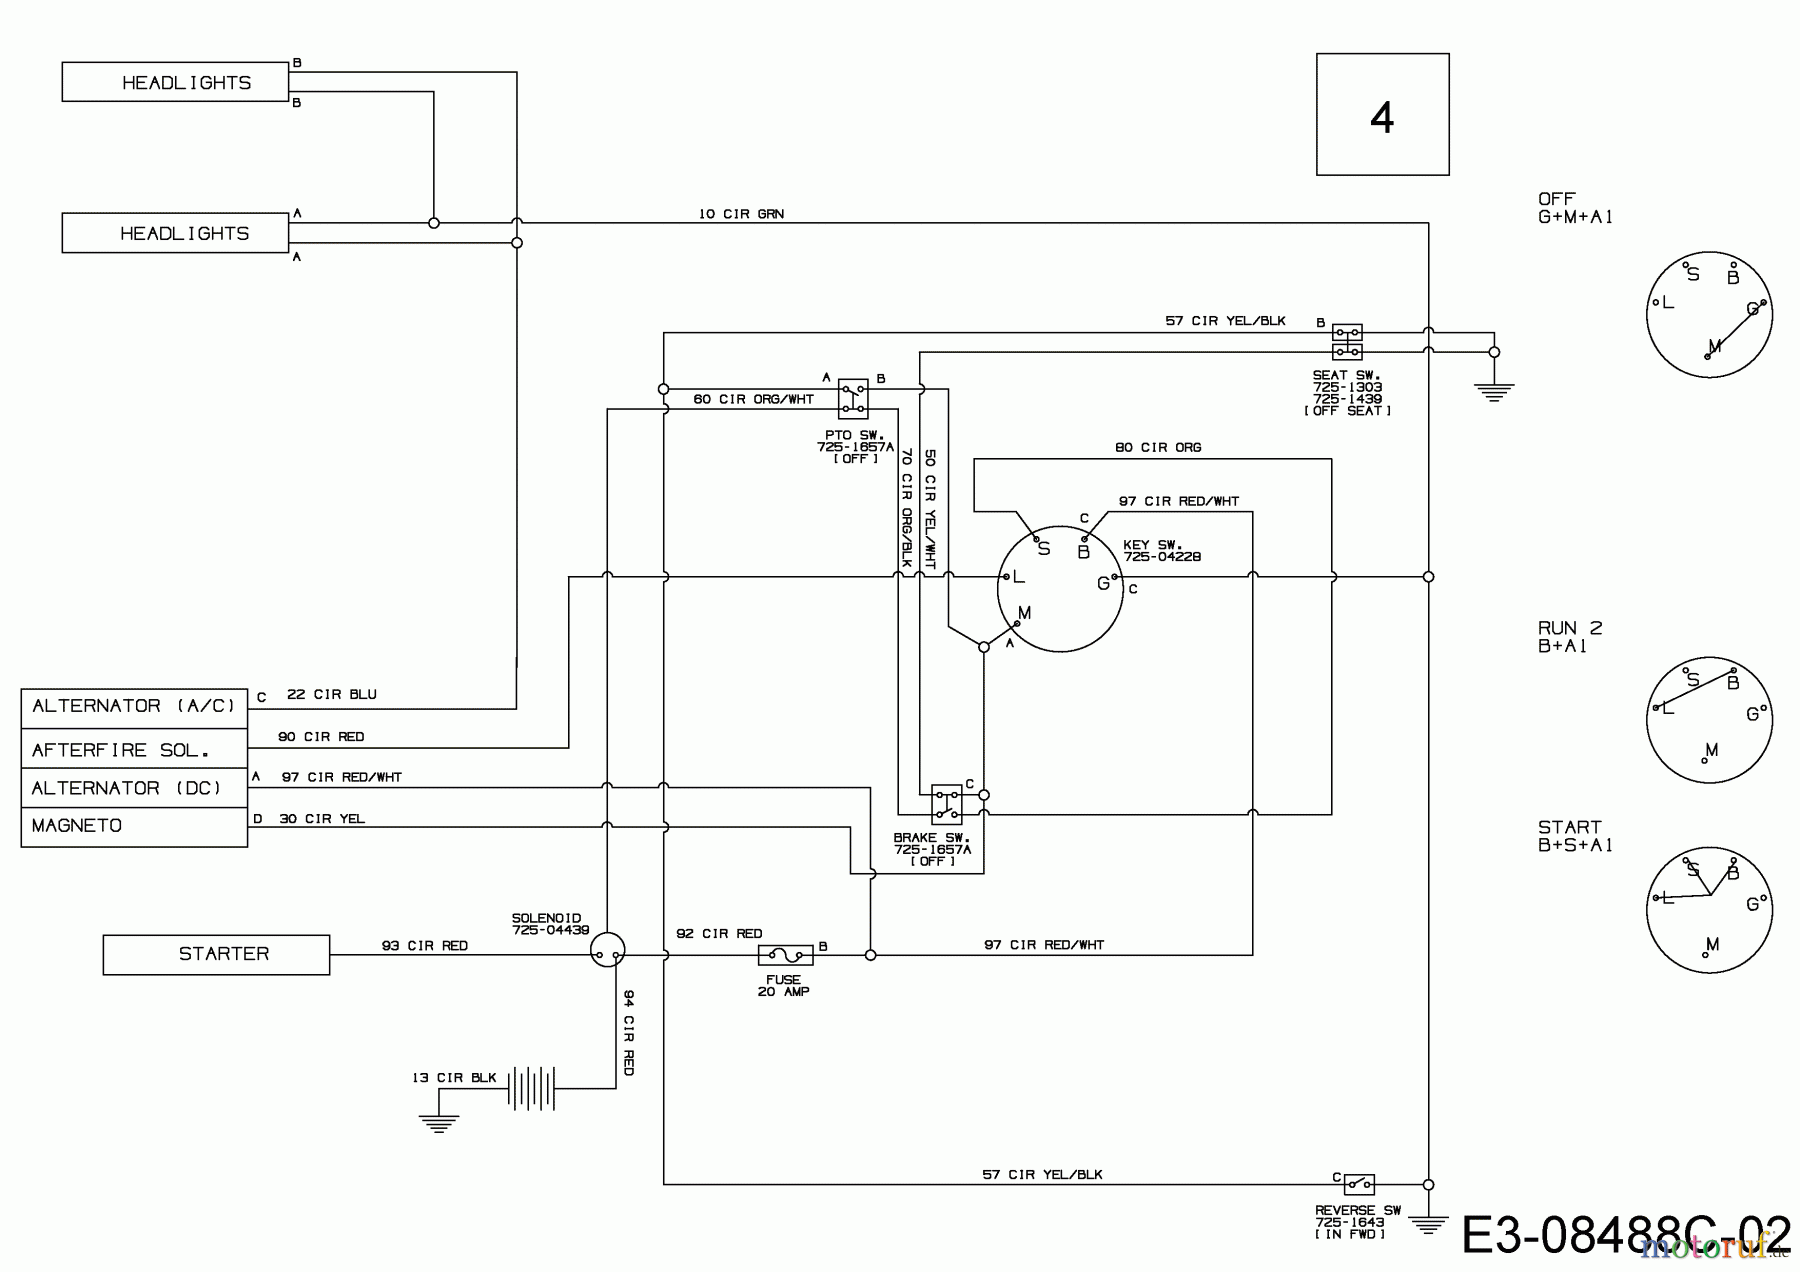  MTD Lawn tractors 420/38 13A2765F308  (2018) Wiring diagram